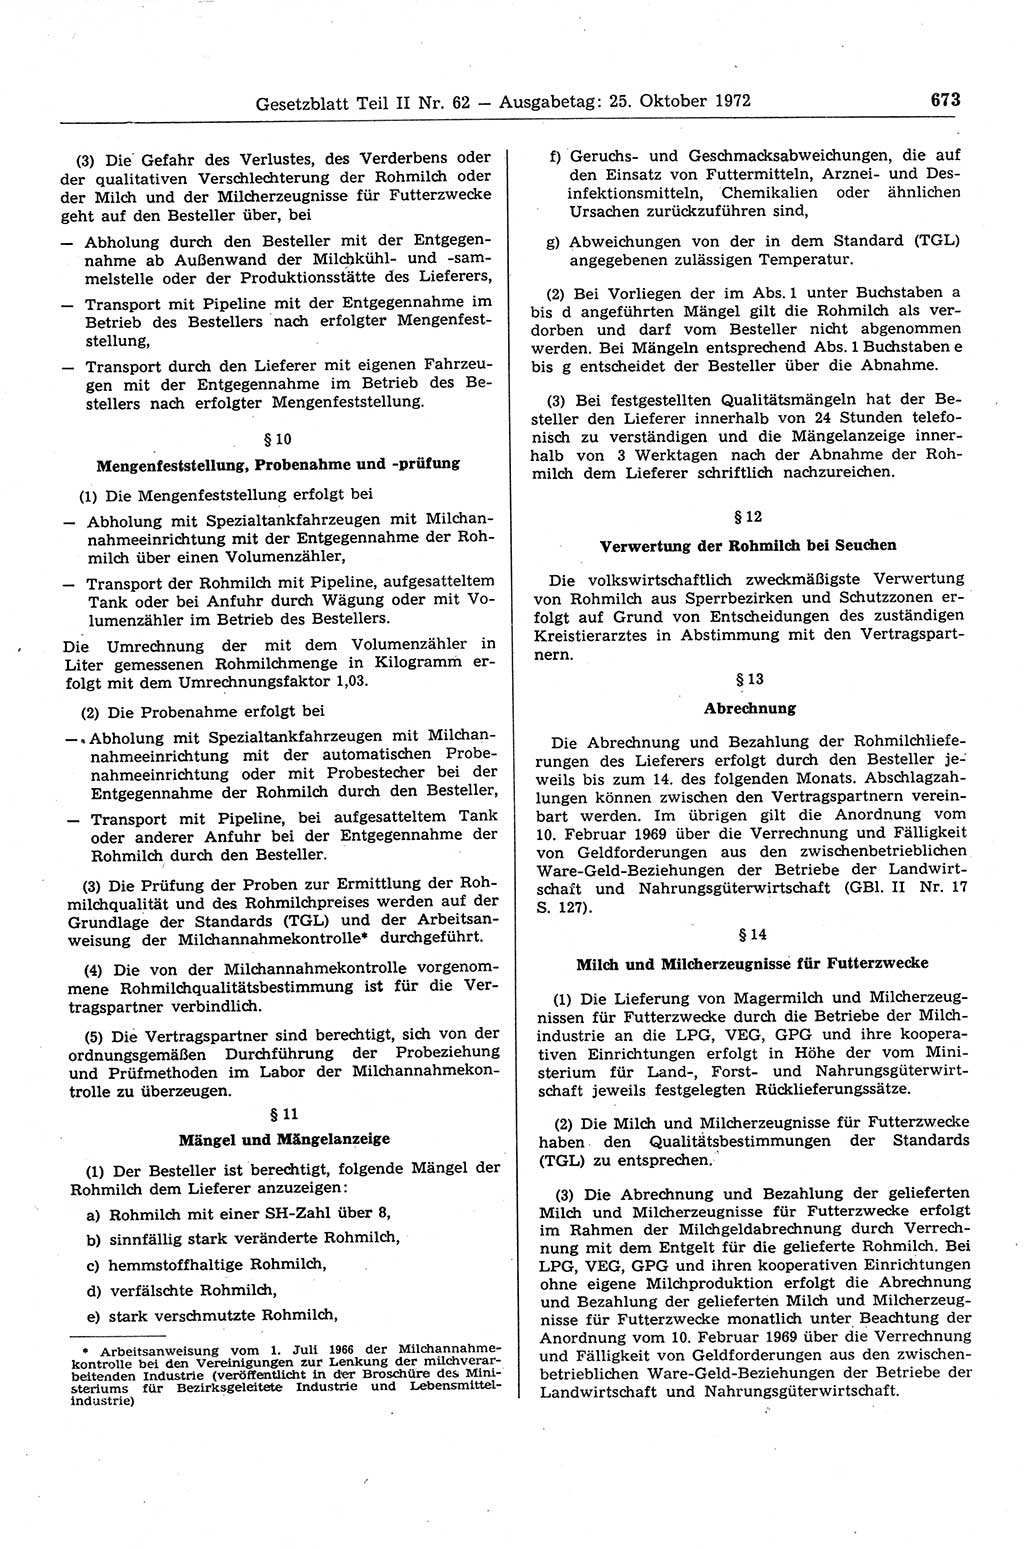 Gesetzblatt (GBl.) der Deutschen Demokratischen Republik (DDR) Teil ⅠⅠ 1972, Seite 673 (GBl. DDR ⅠⅠ 1972, S. 673)